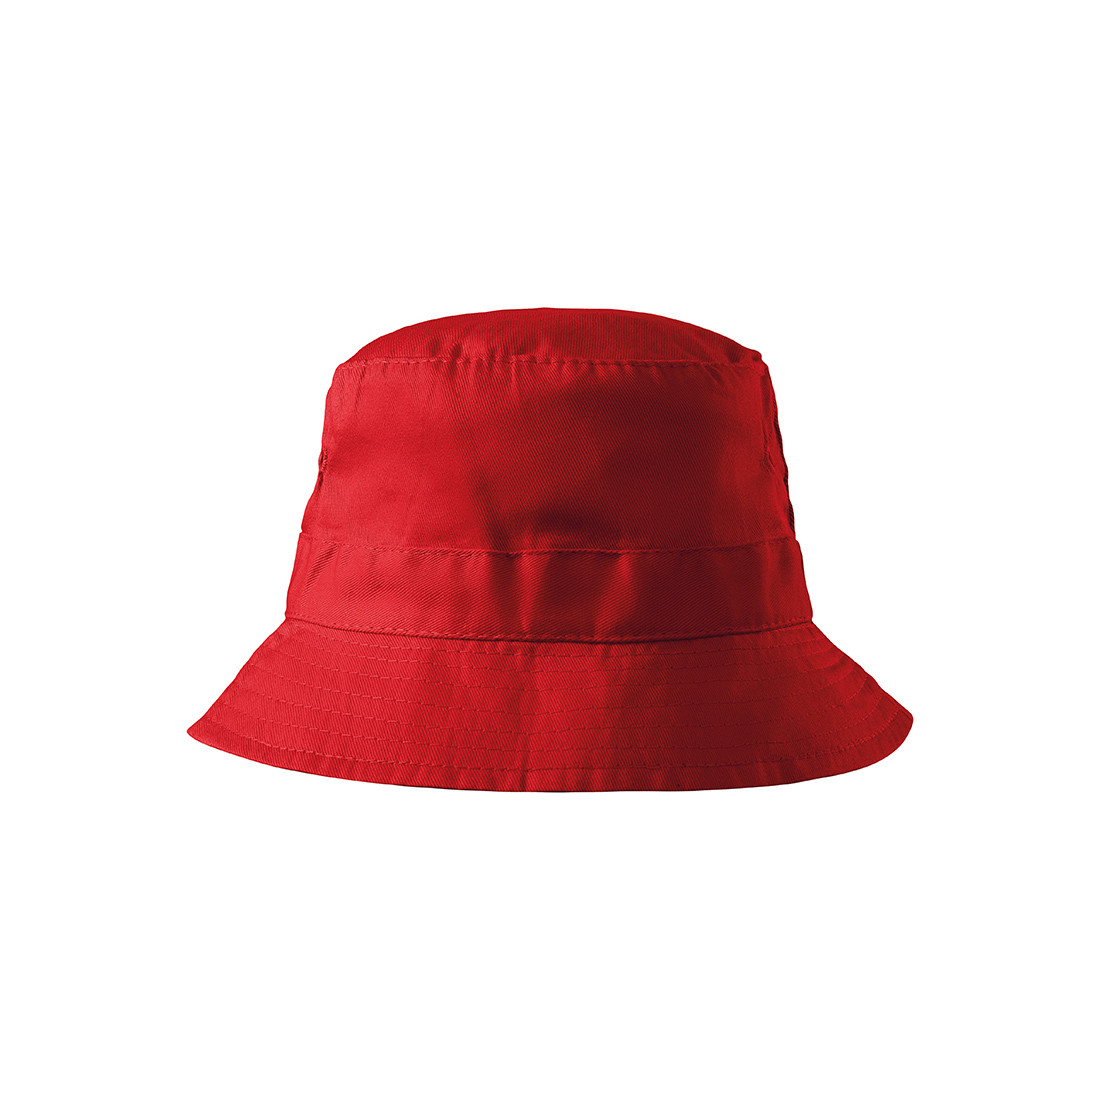 Sombrero CLASSIC - Ropa de protección